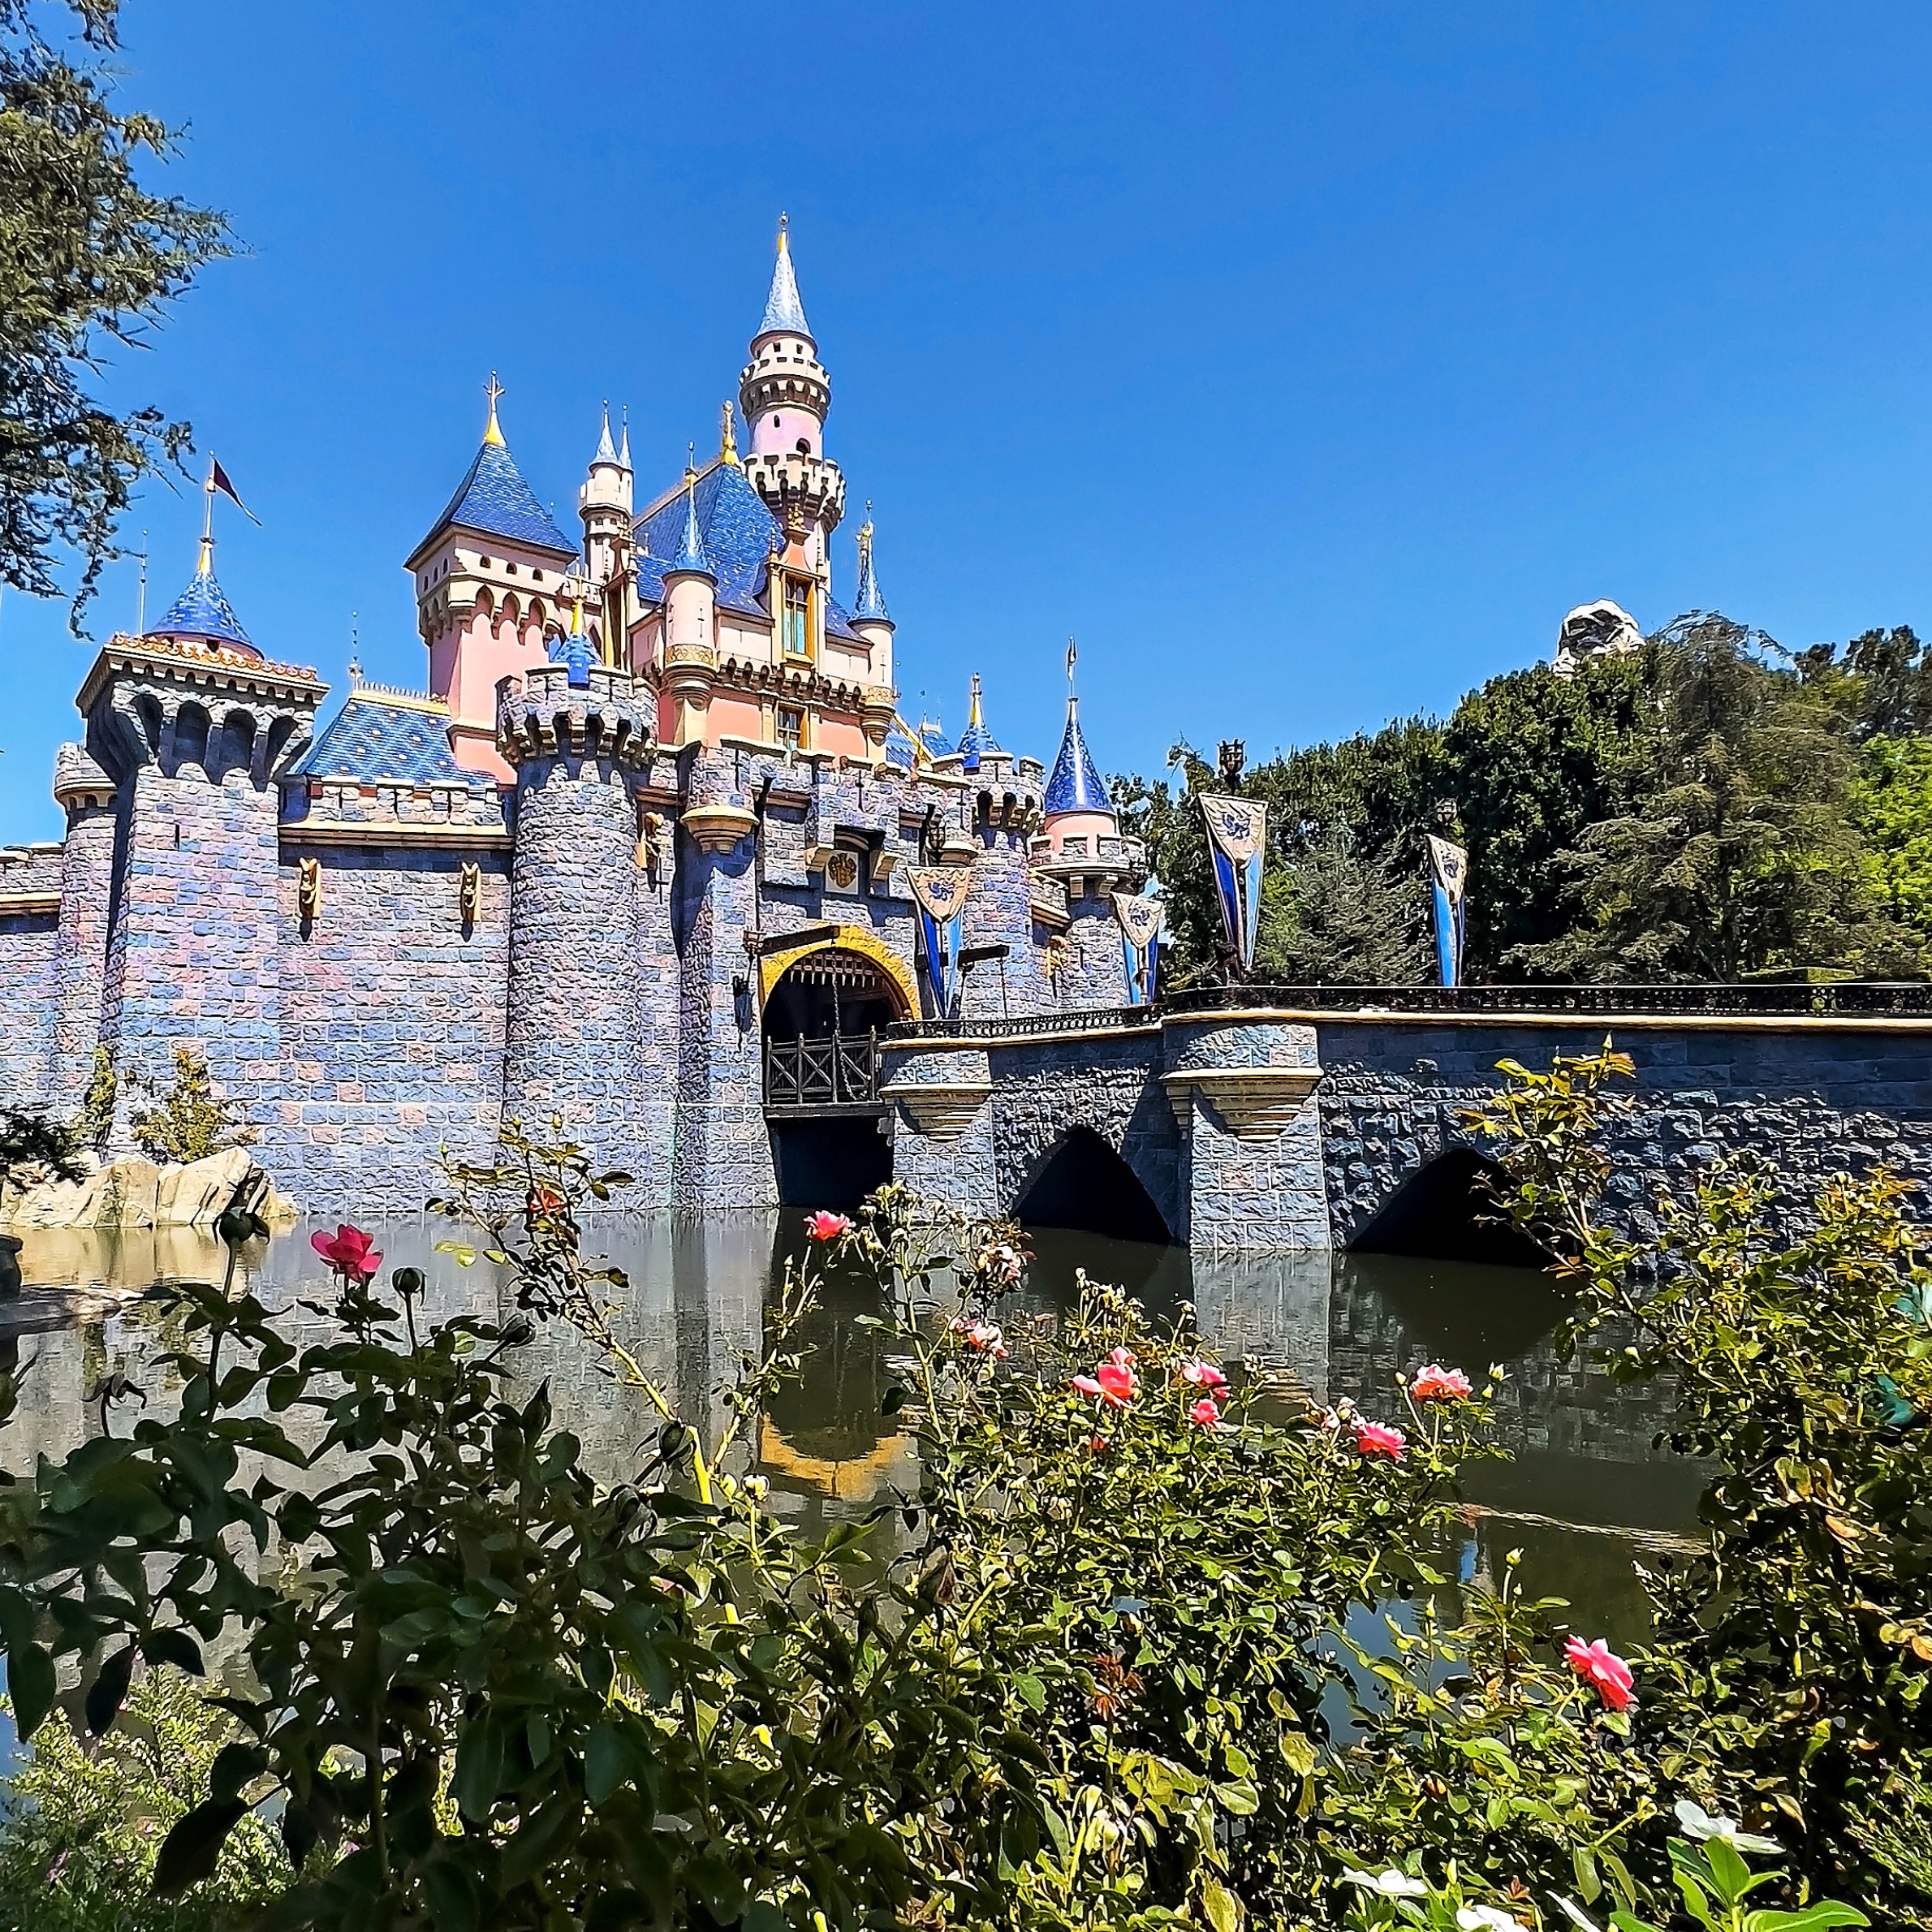 15 Reasons to Visit Disneyland Resort